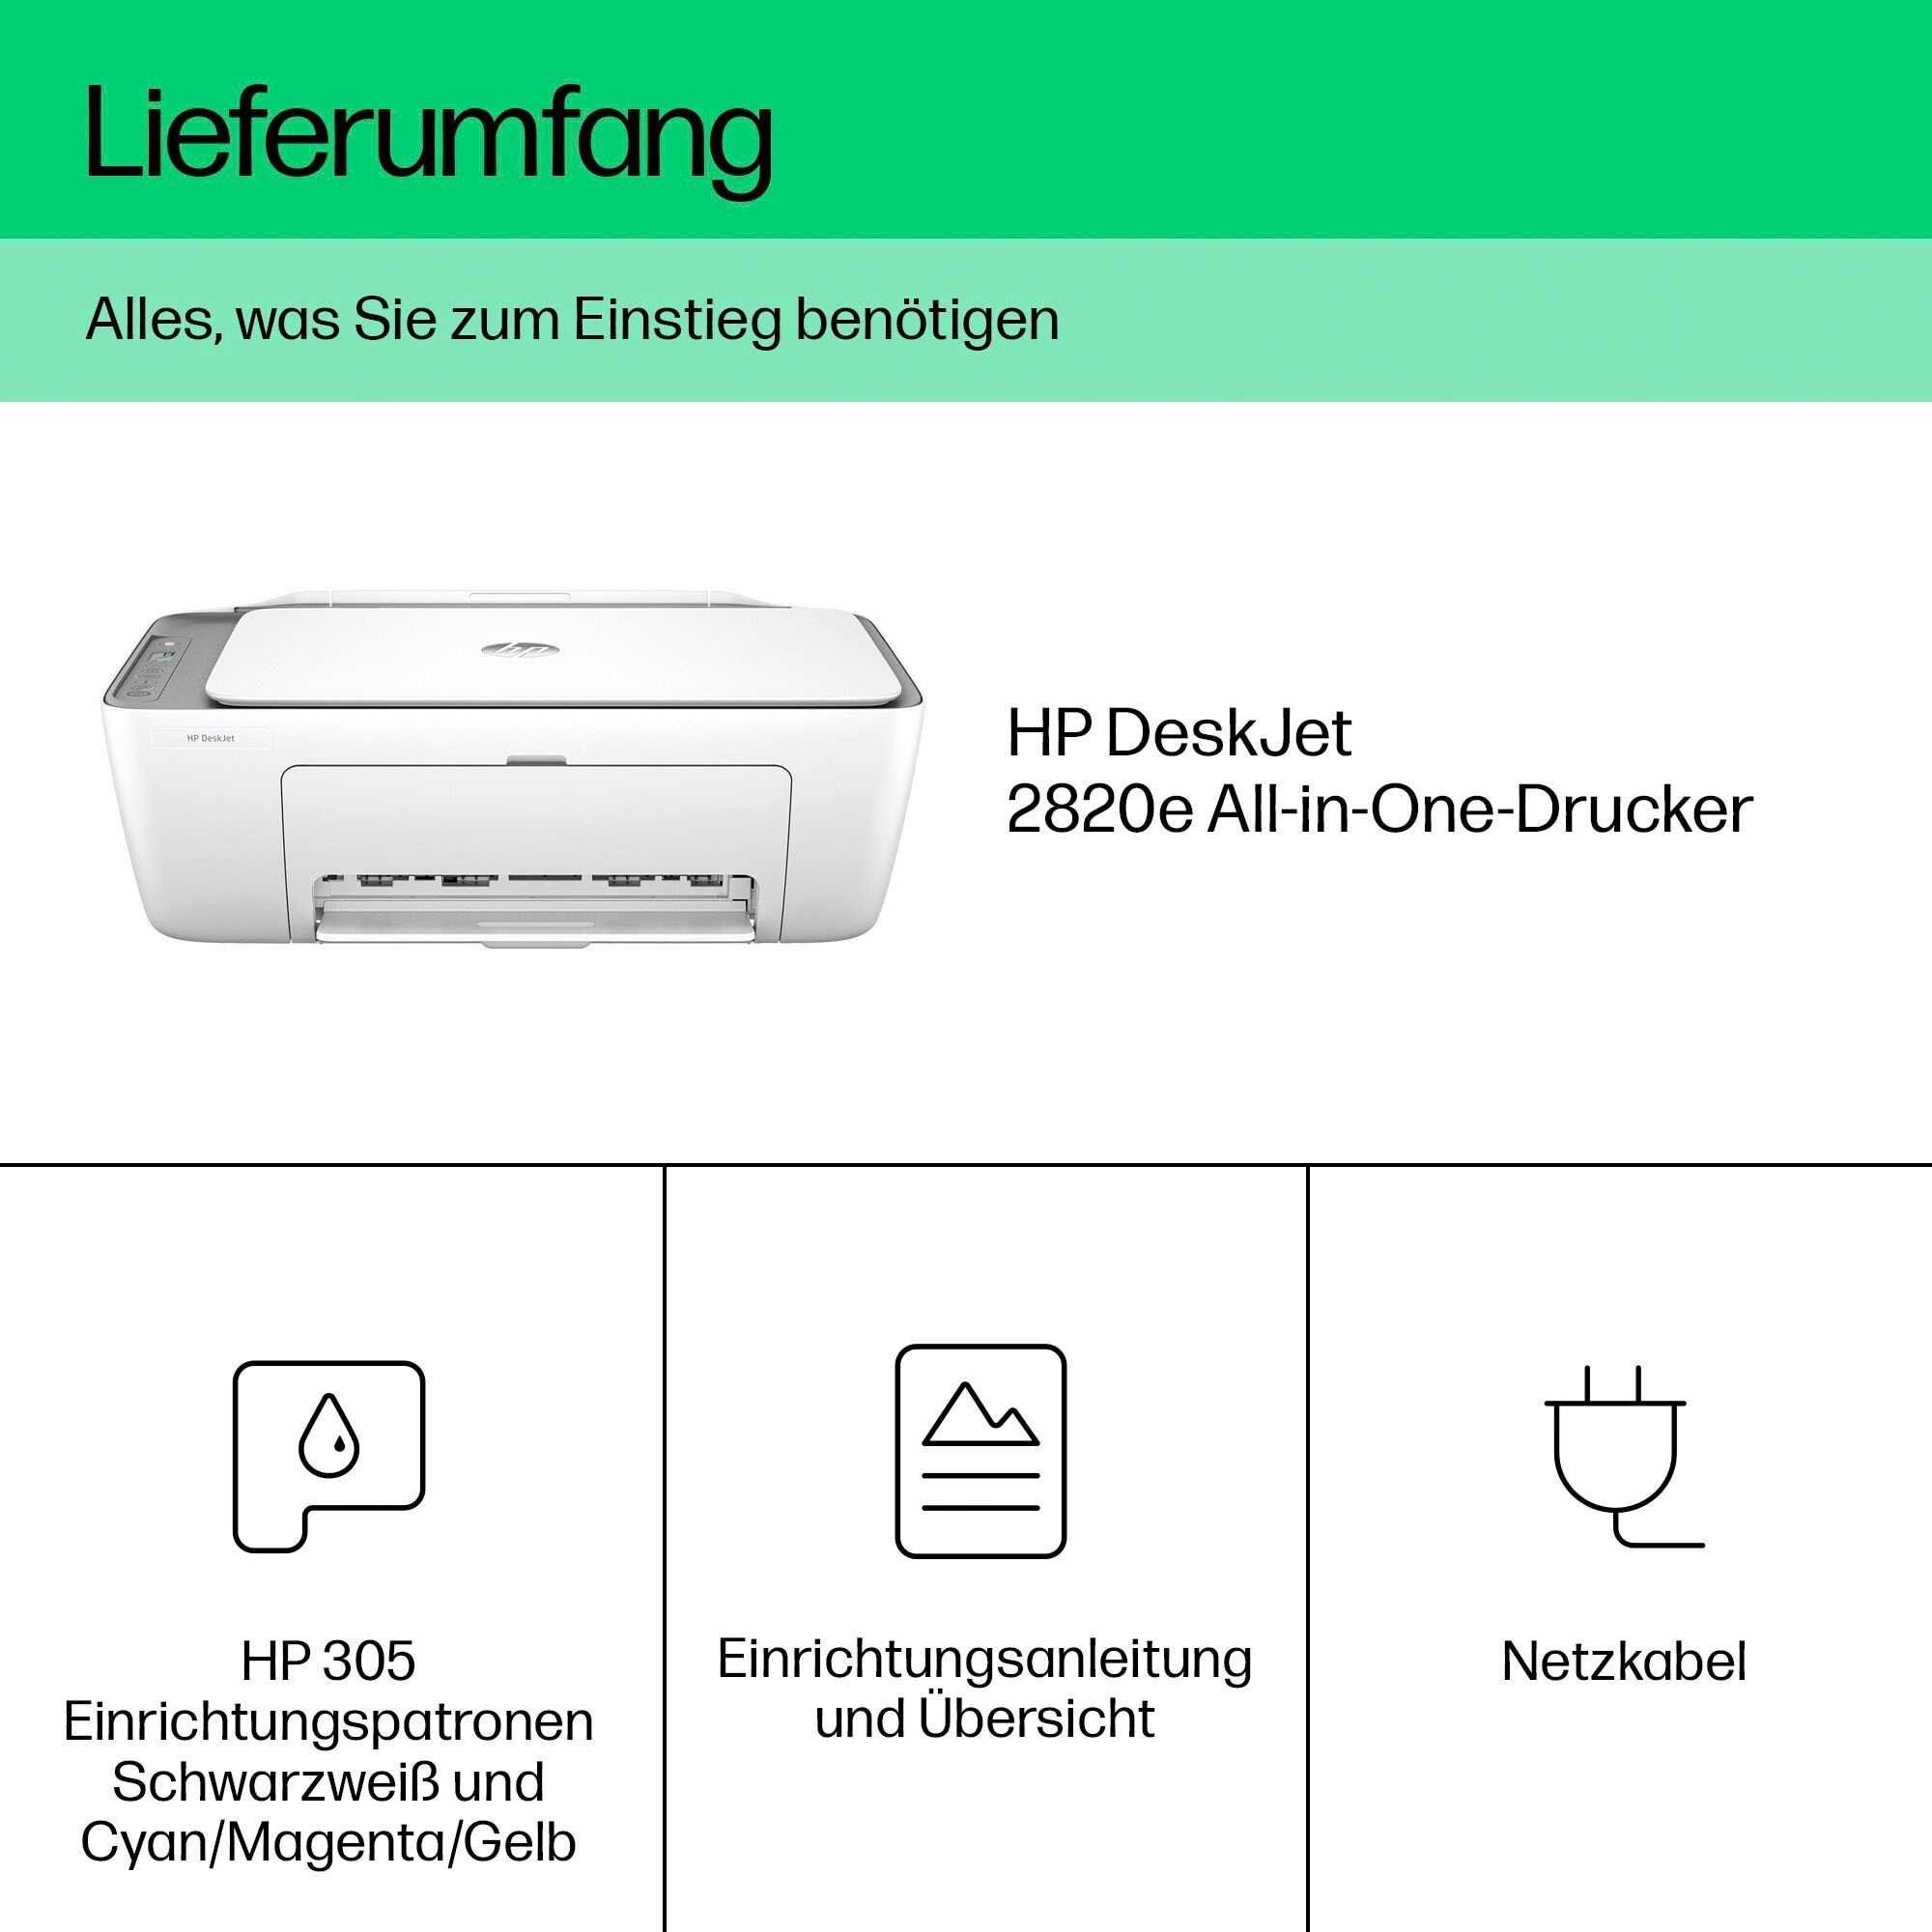 HP Multifunktionsdrucker kompatibel 2820e«, OTTO HP Ink Instant »DeskJet bei